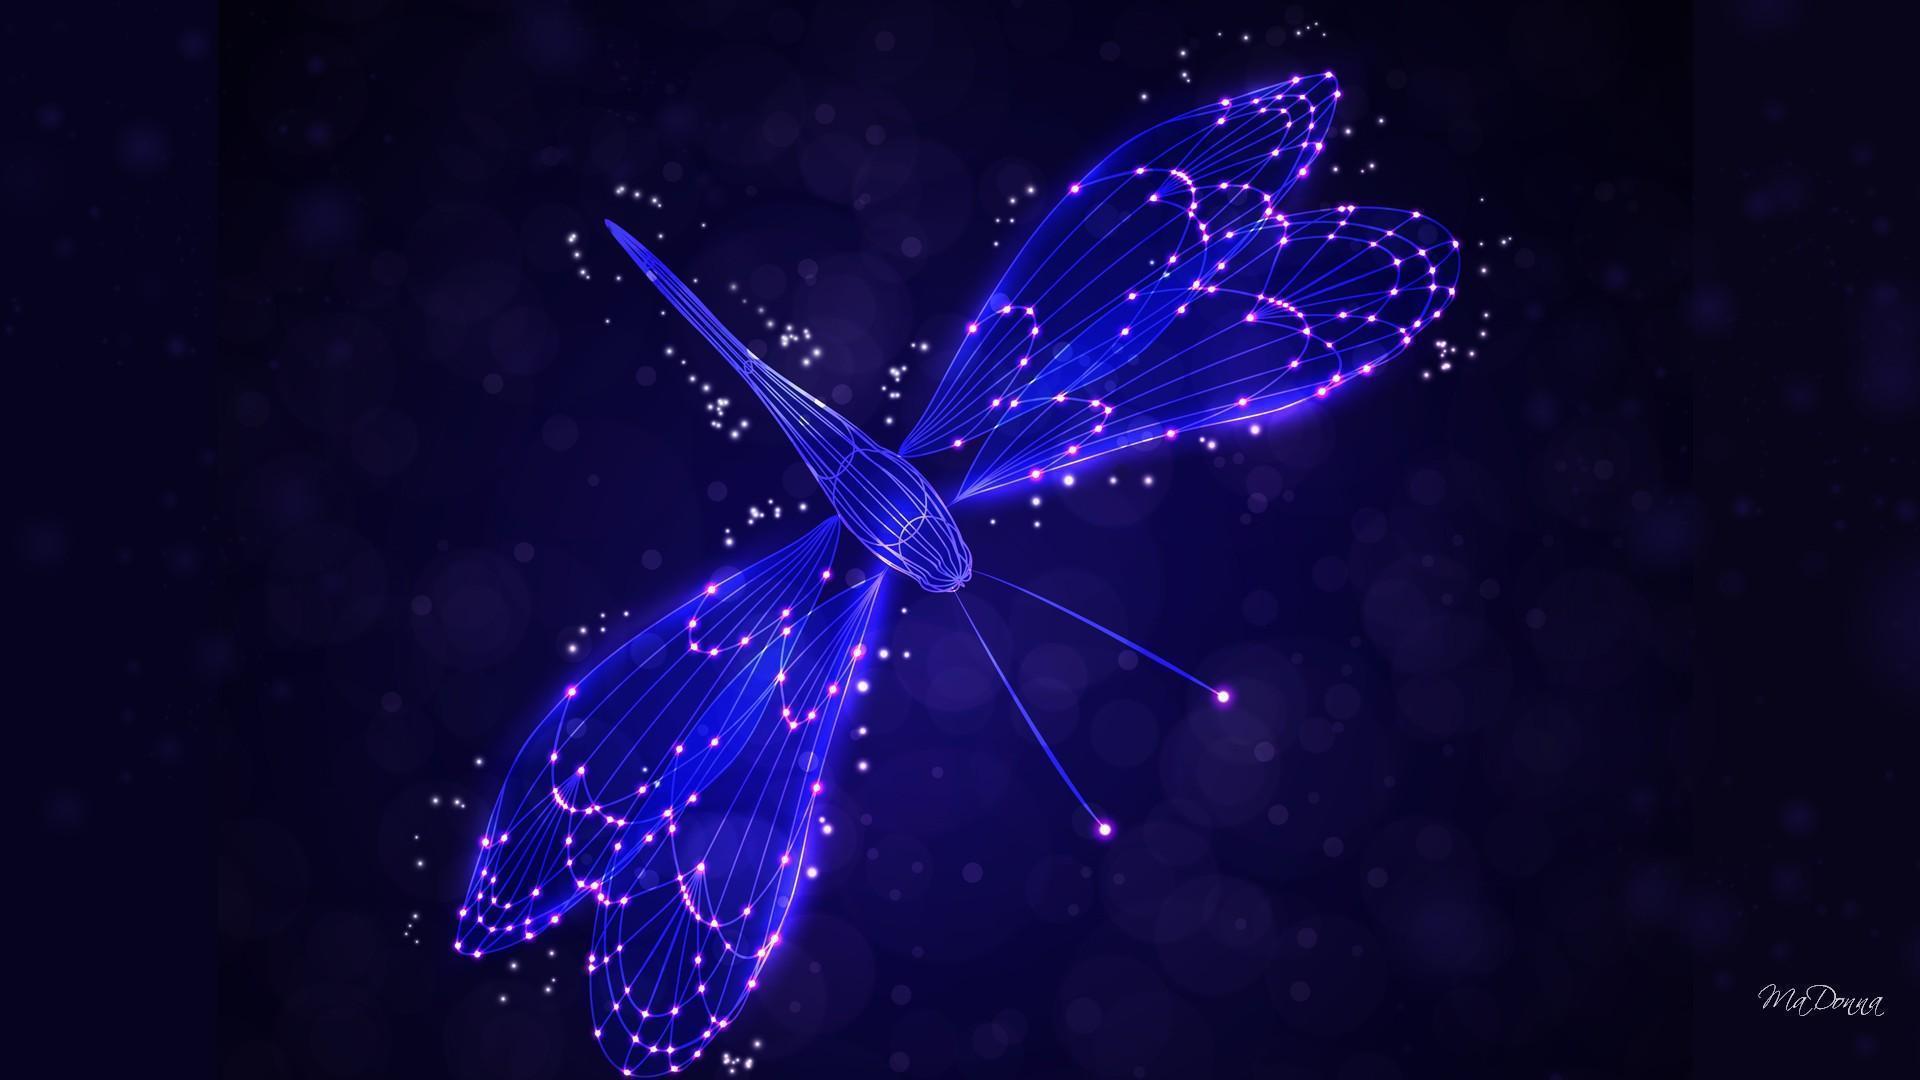 Dragonfly HD Desktop Wallpaper for Widescreen, High Definition